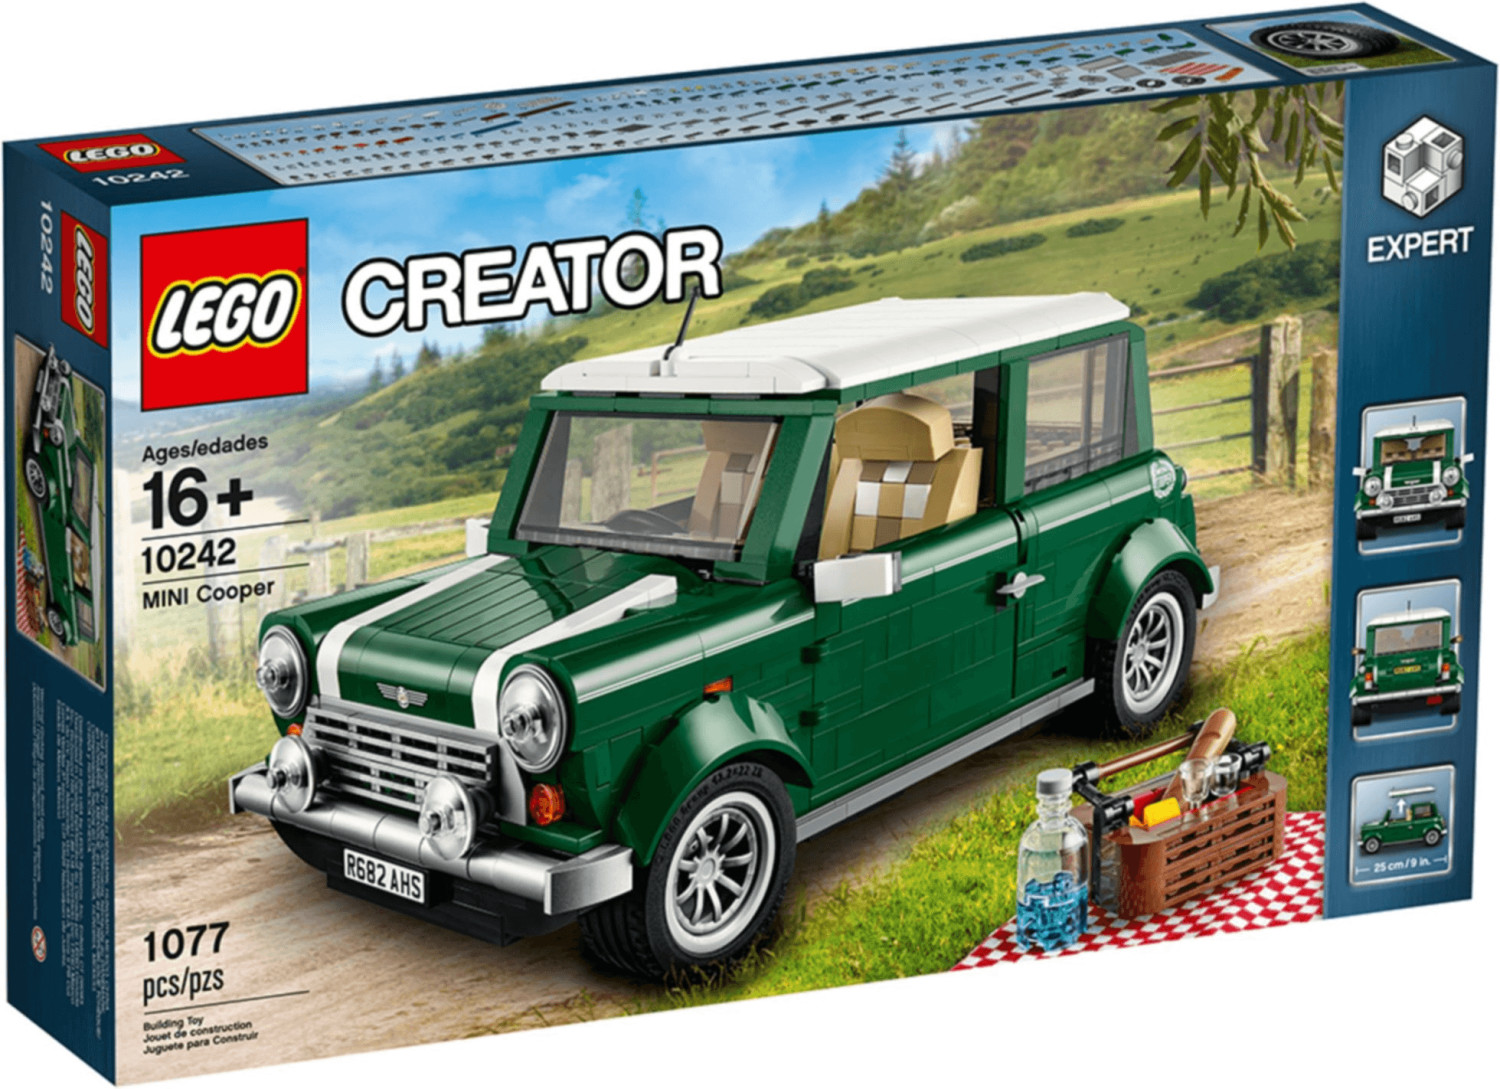 Kép a LEGO Creator - Mini Cooper 10242